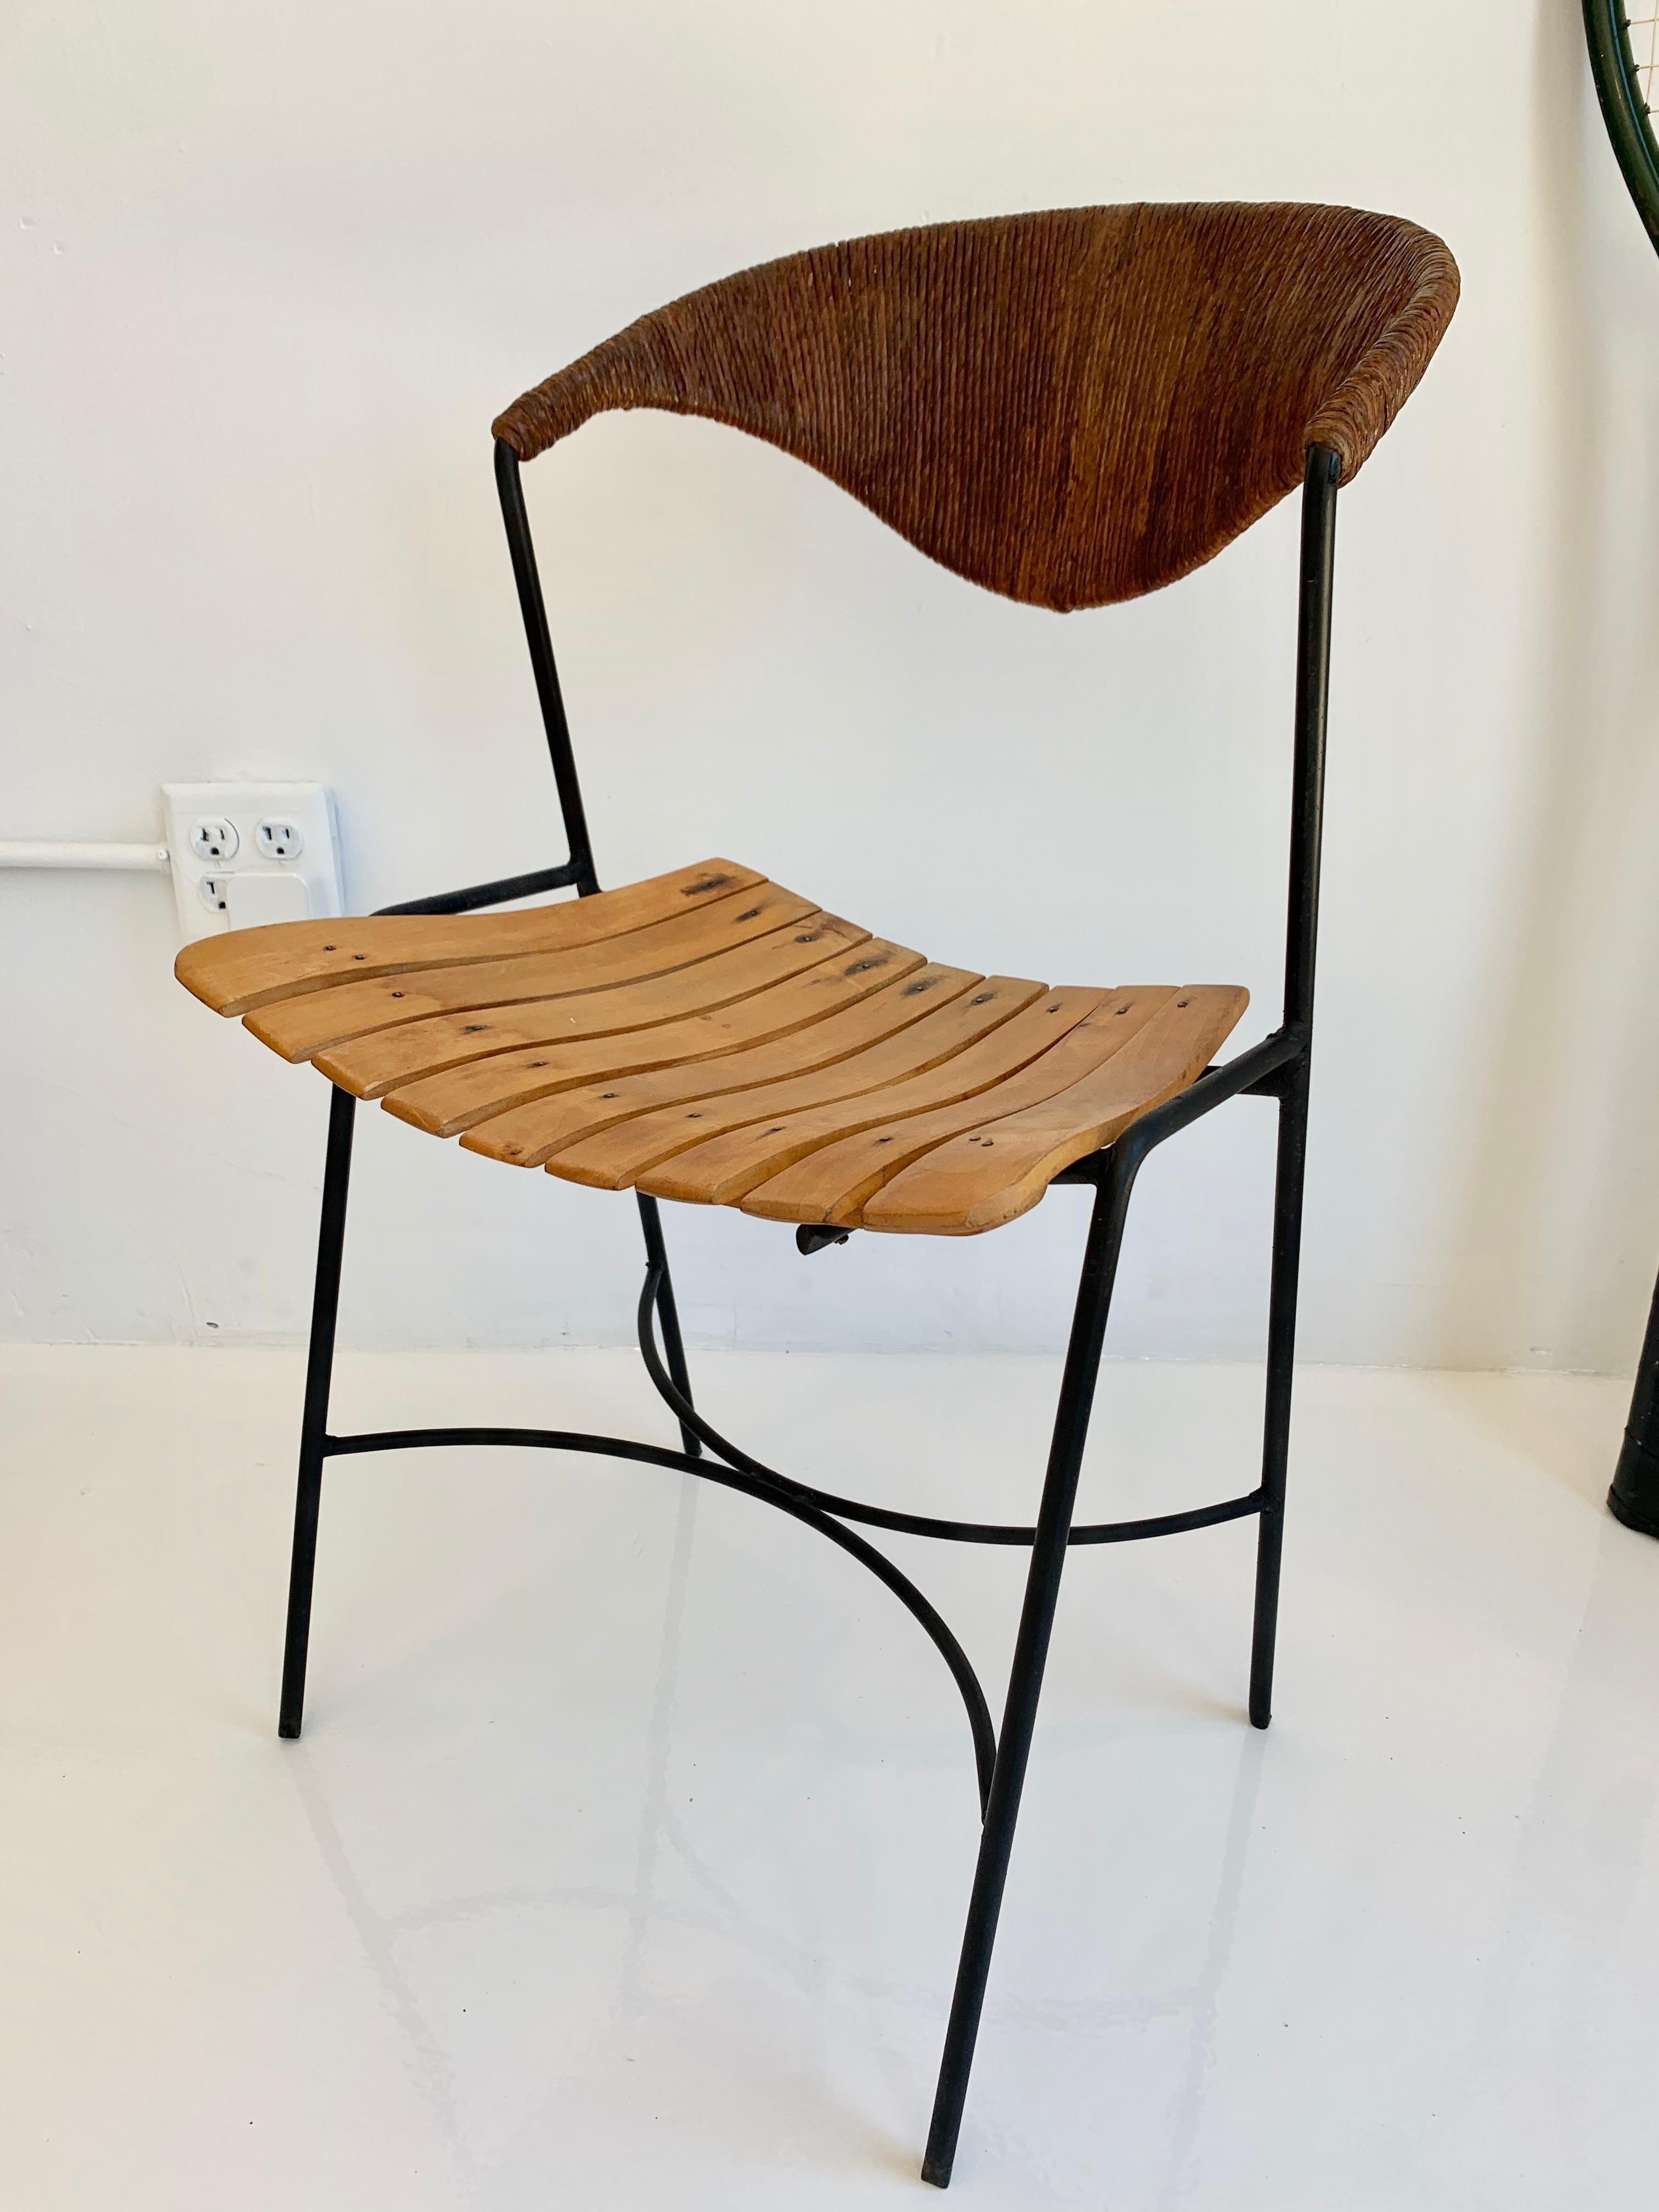 Chaises sculpturales Arthur Umanoff avec dossier en jonc, siège en bois à lattes et pieds en fer. Dossier flottant. Ils sont superbes sous tous les angles. Bon état vintage. Cinq disponibles. Les prix sont fixés à l'unité. 
 